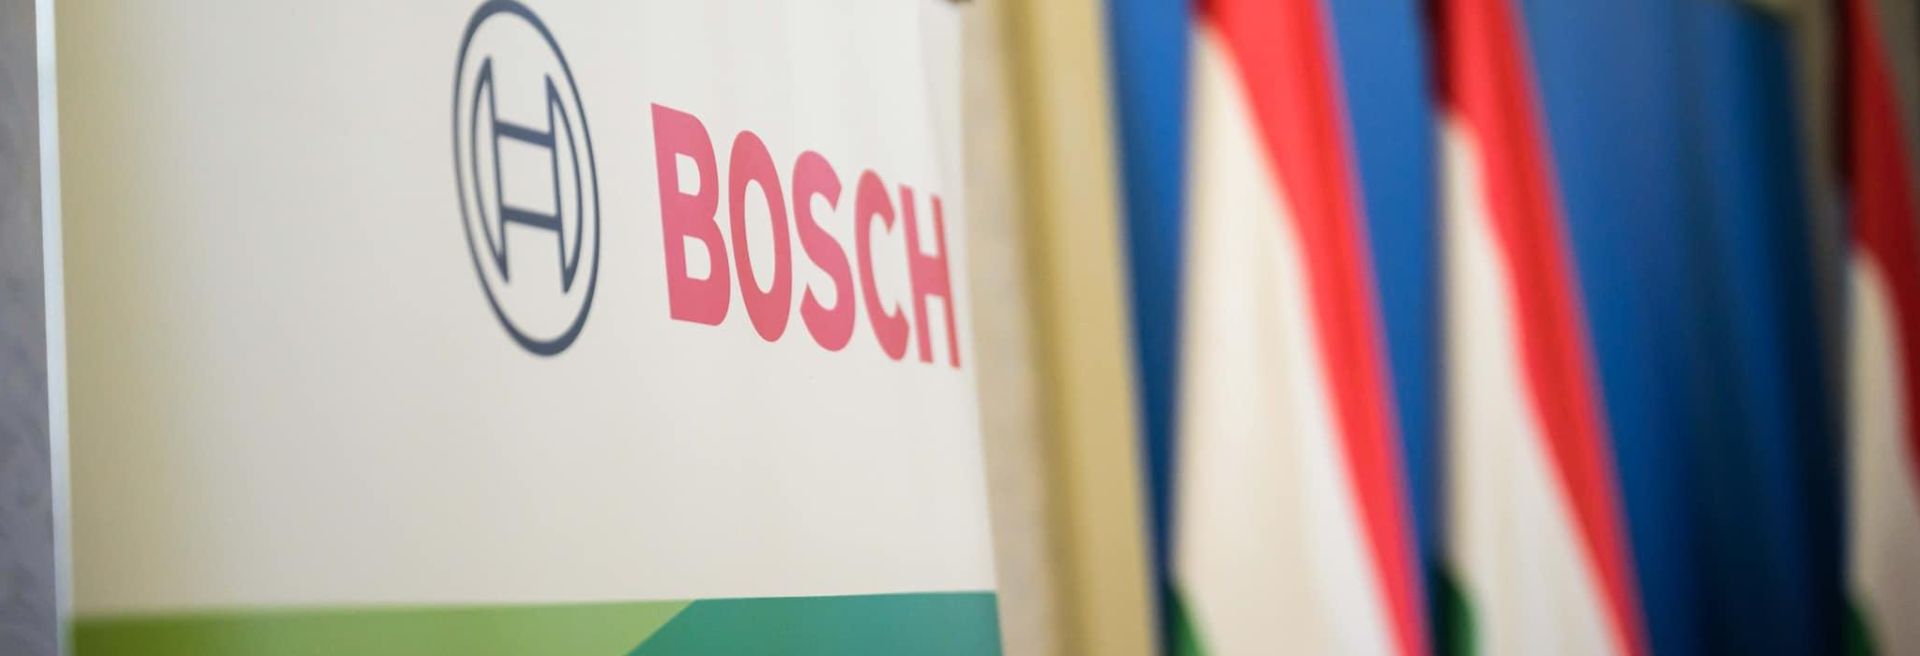 Két új jelentős fejlesztéssel erősíti magyarországi jelenlétét a Bosch csoport